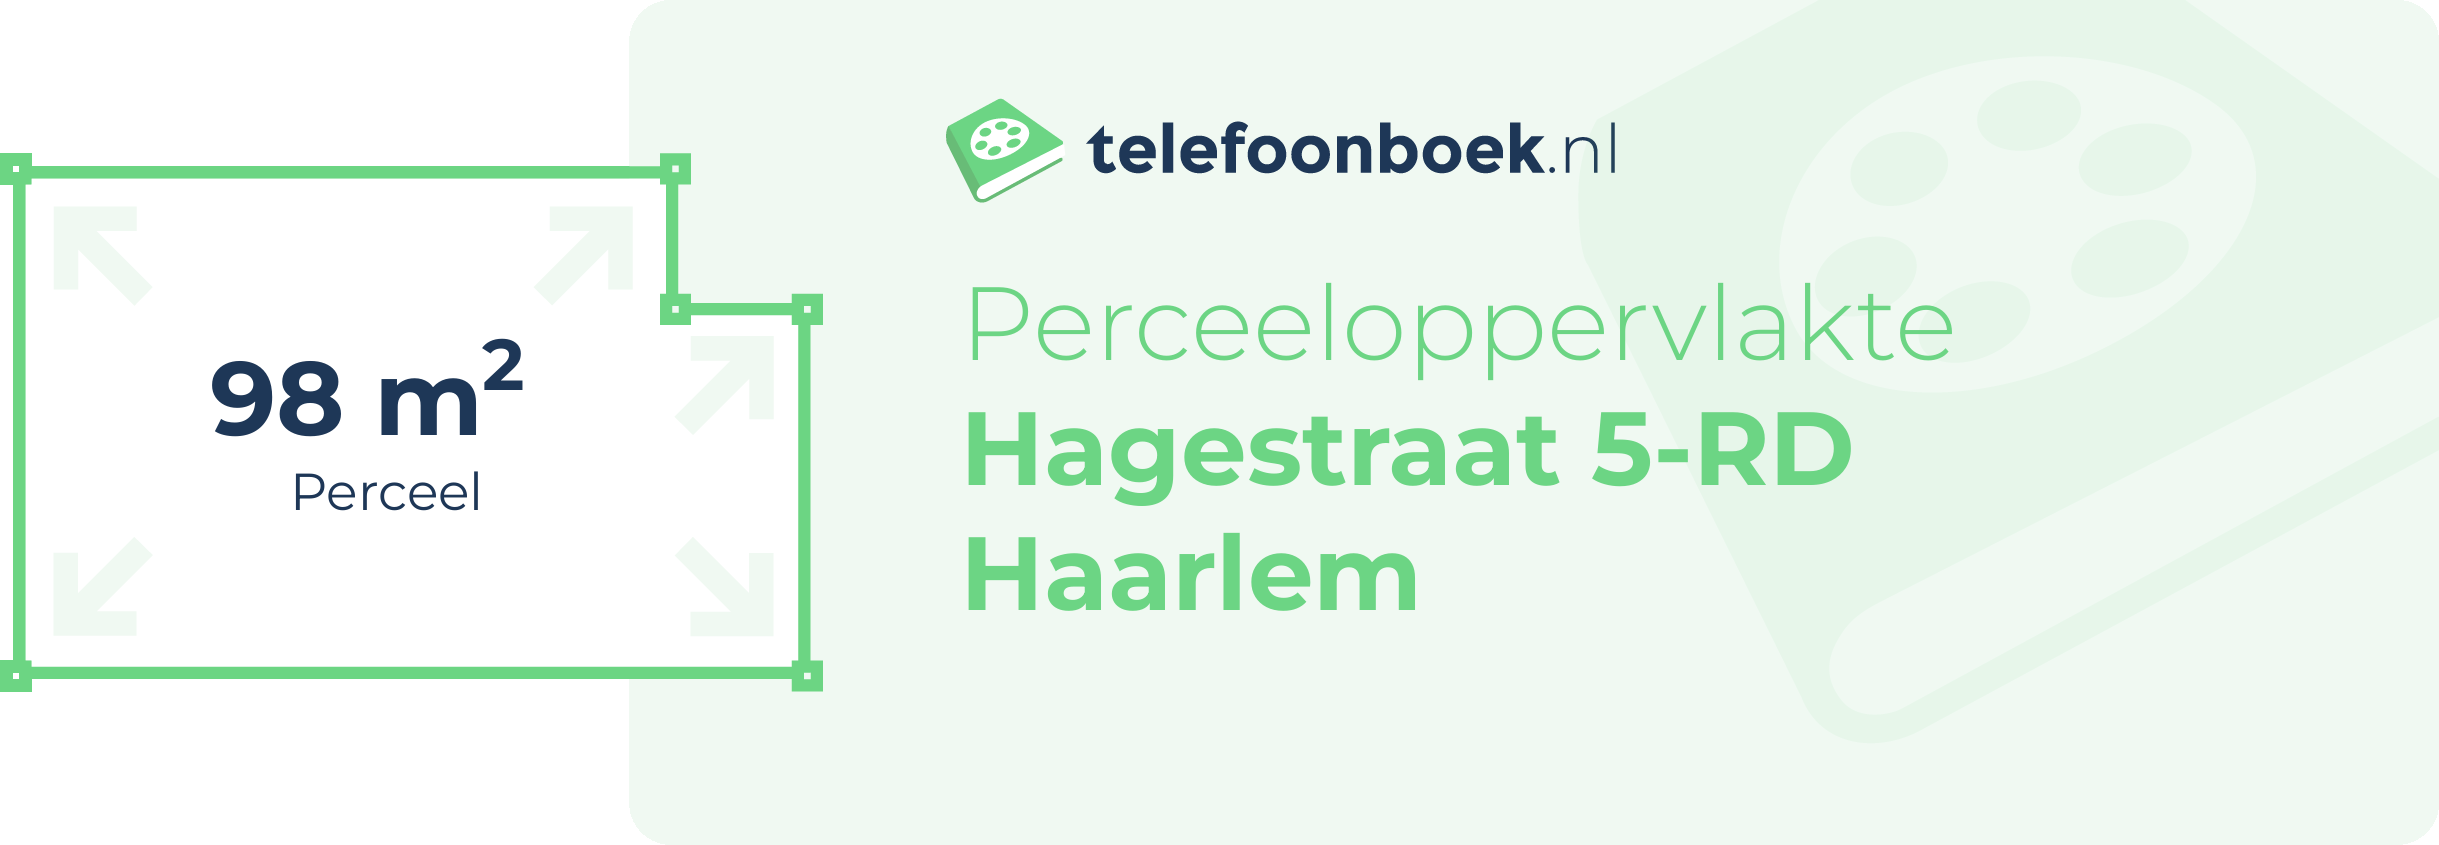 Perceeloppervlakte Hagestraat 5-RD Haarlem